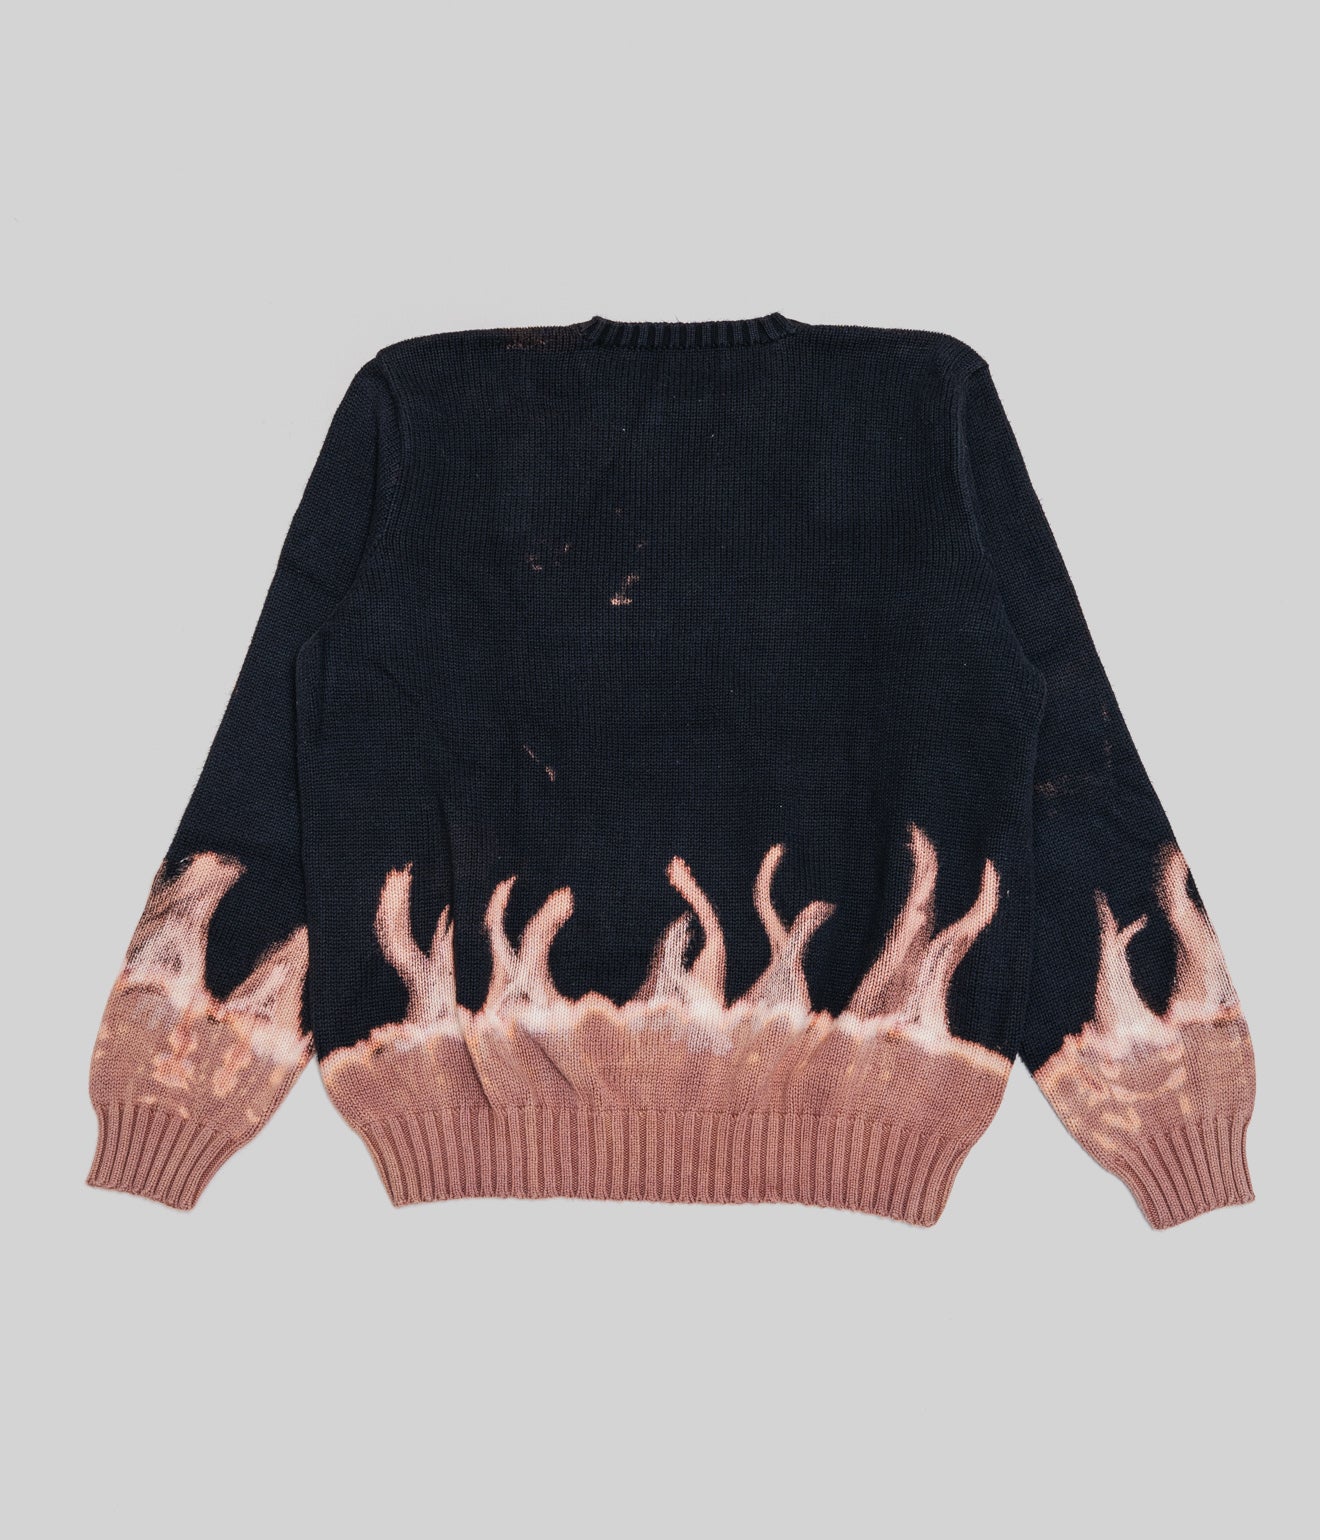 r "Tie-dye cotton sweater fire pattern" Black 2 - WEAREALLANIMALS